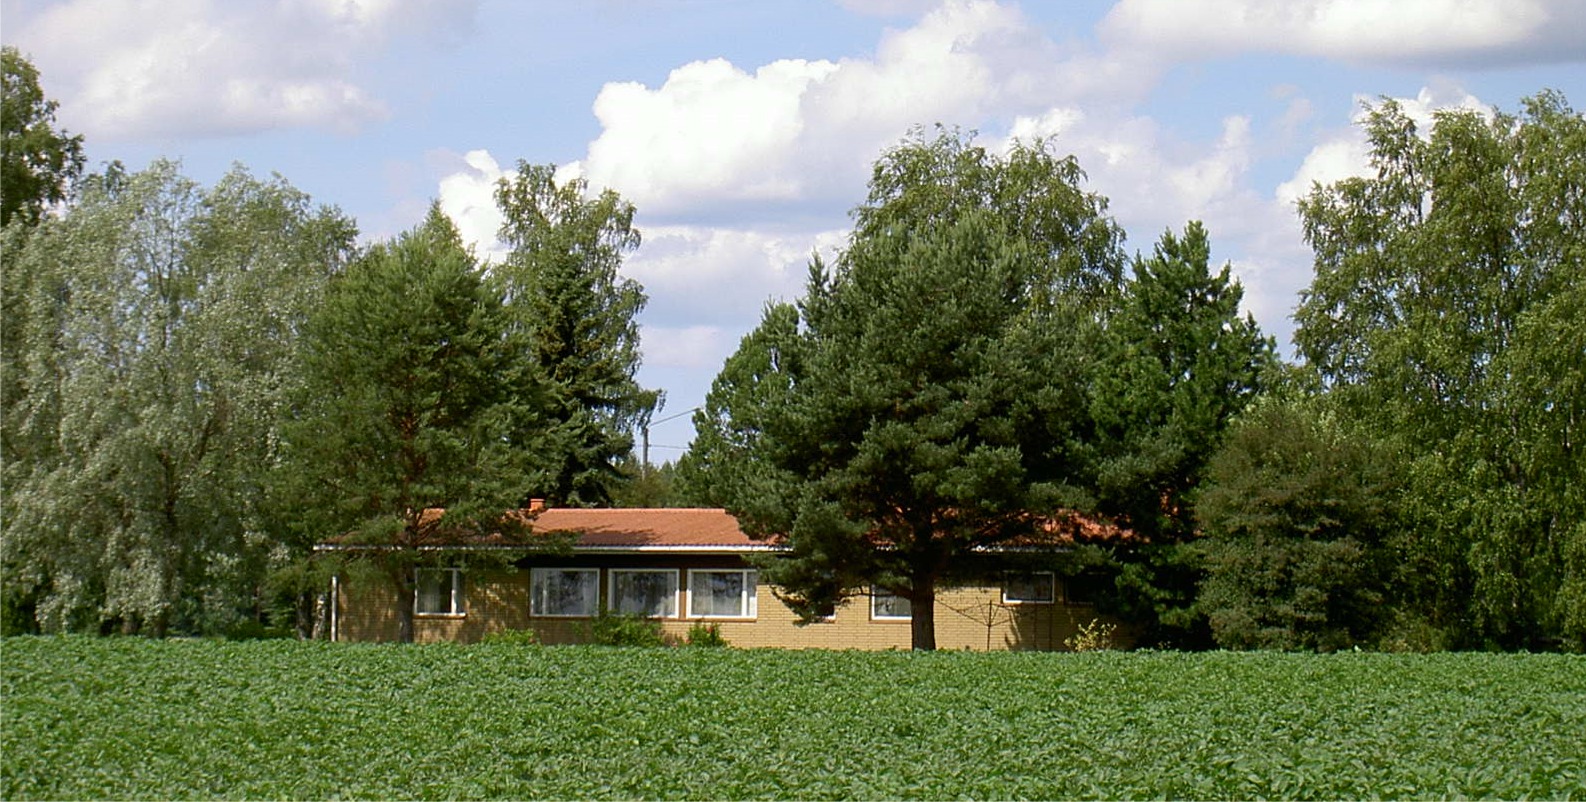 Den nya gården som byggdes 1969 ligger som sig bör inbäddad i grönska, omgärdad av potatisodlingar. Foto från sydost år 2004.